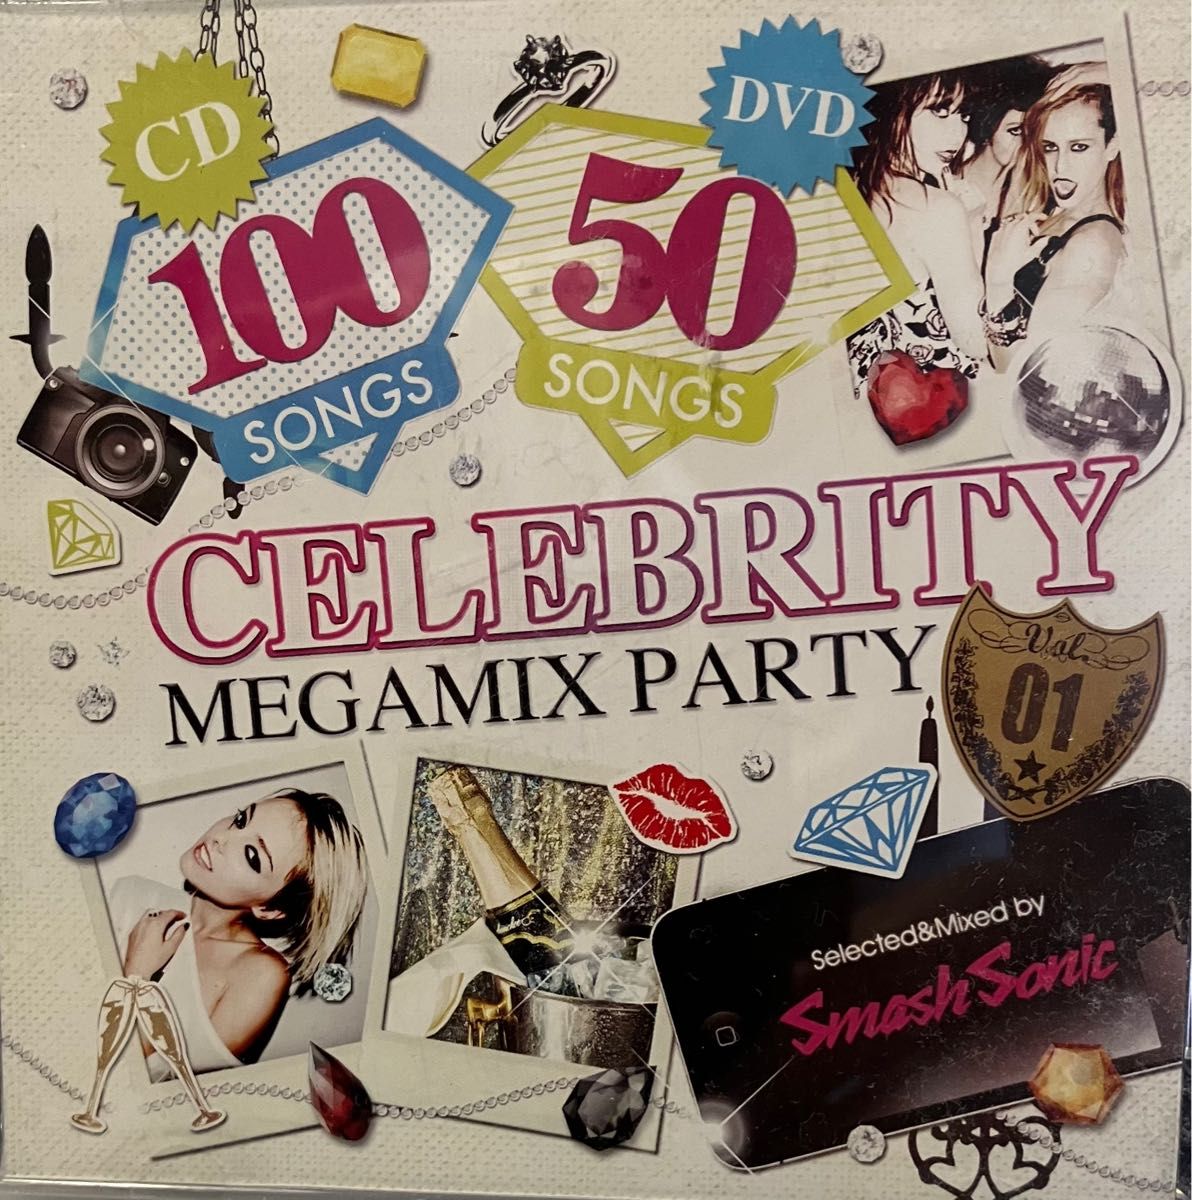  HIPHOP MIX CD & DVD  CELEBRITY MEGAMIX PARTY VOL.01 